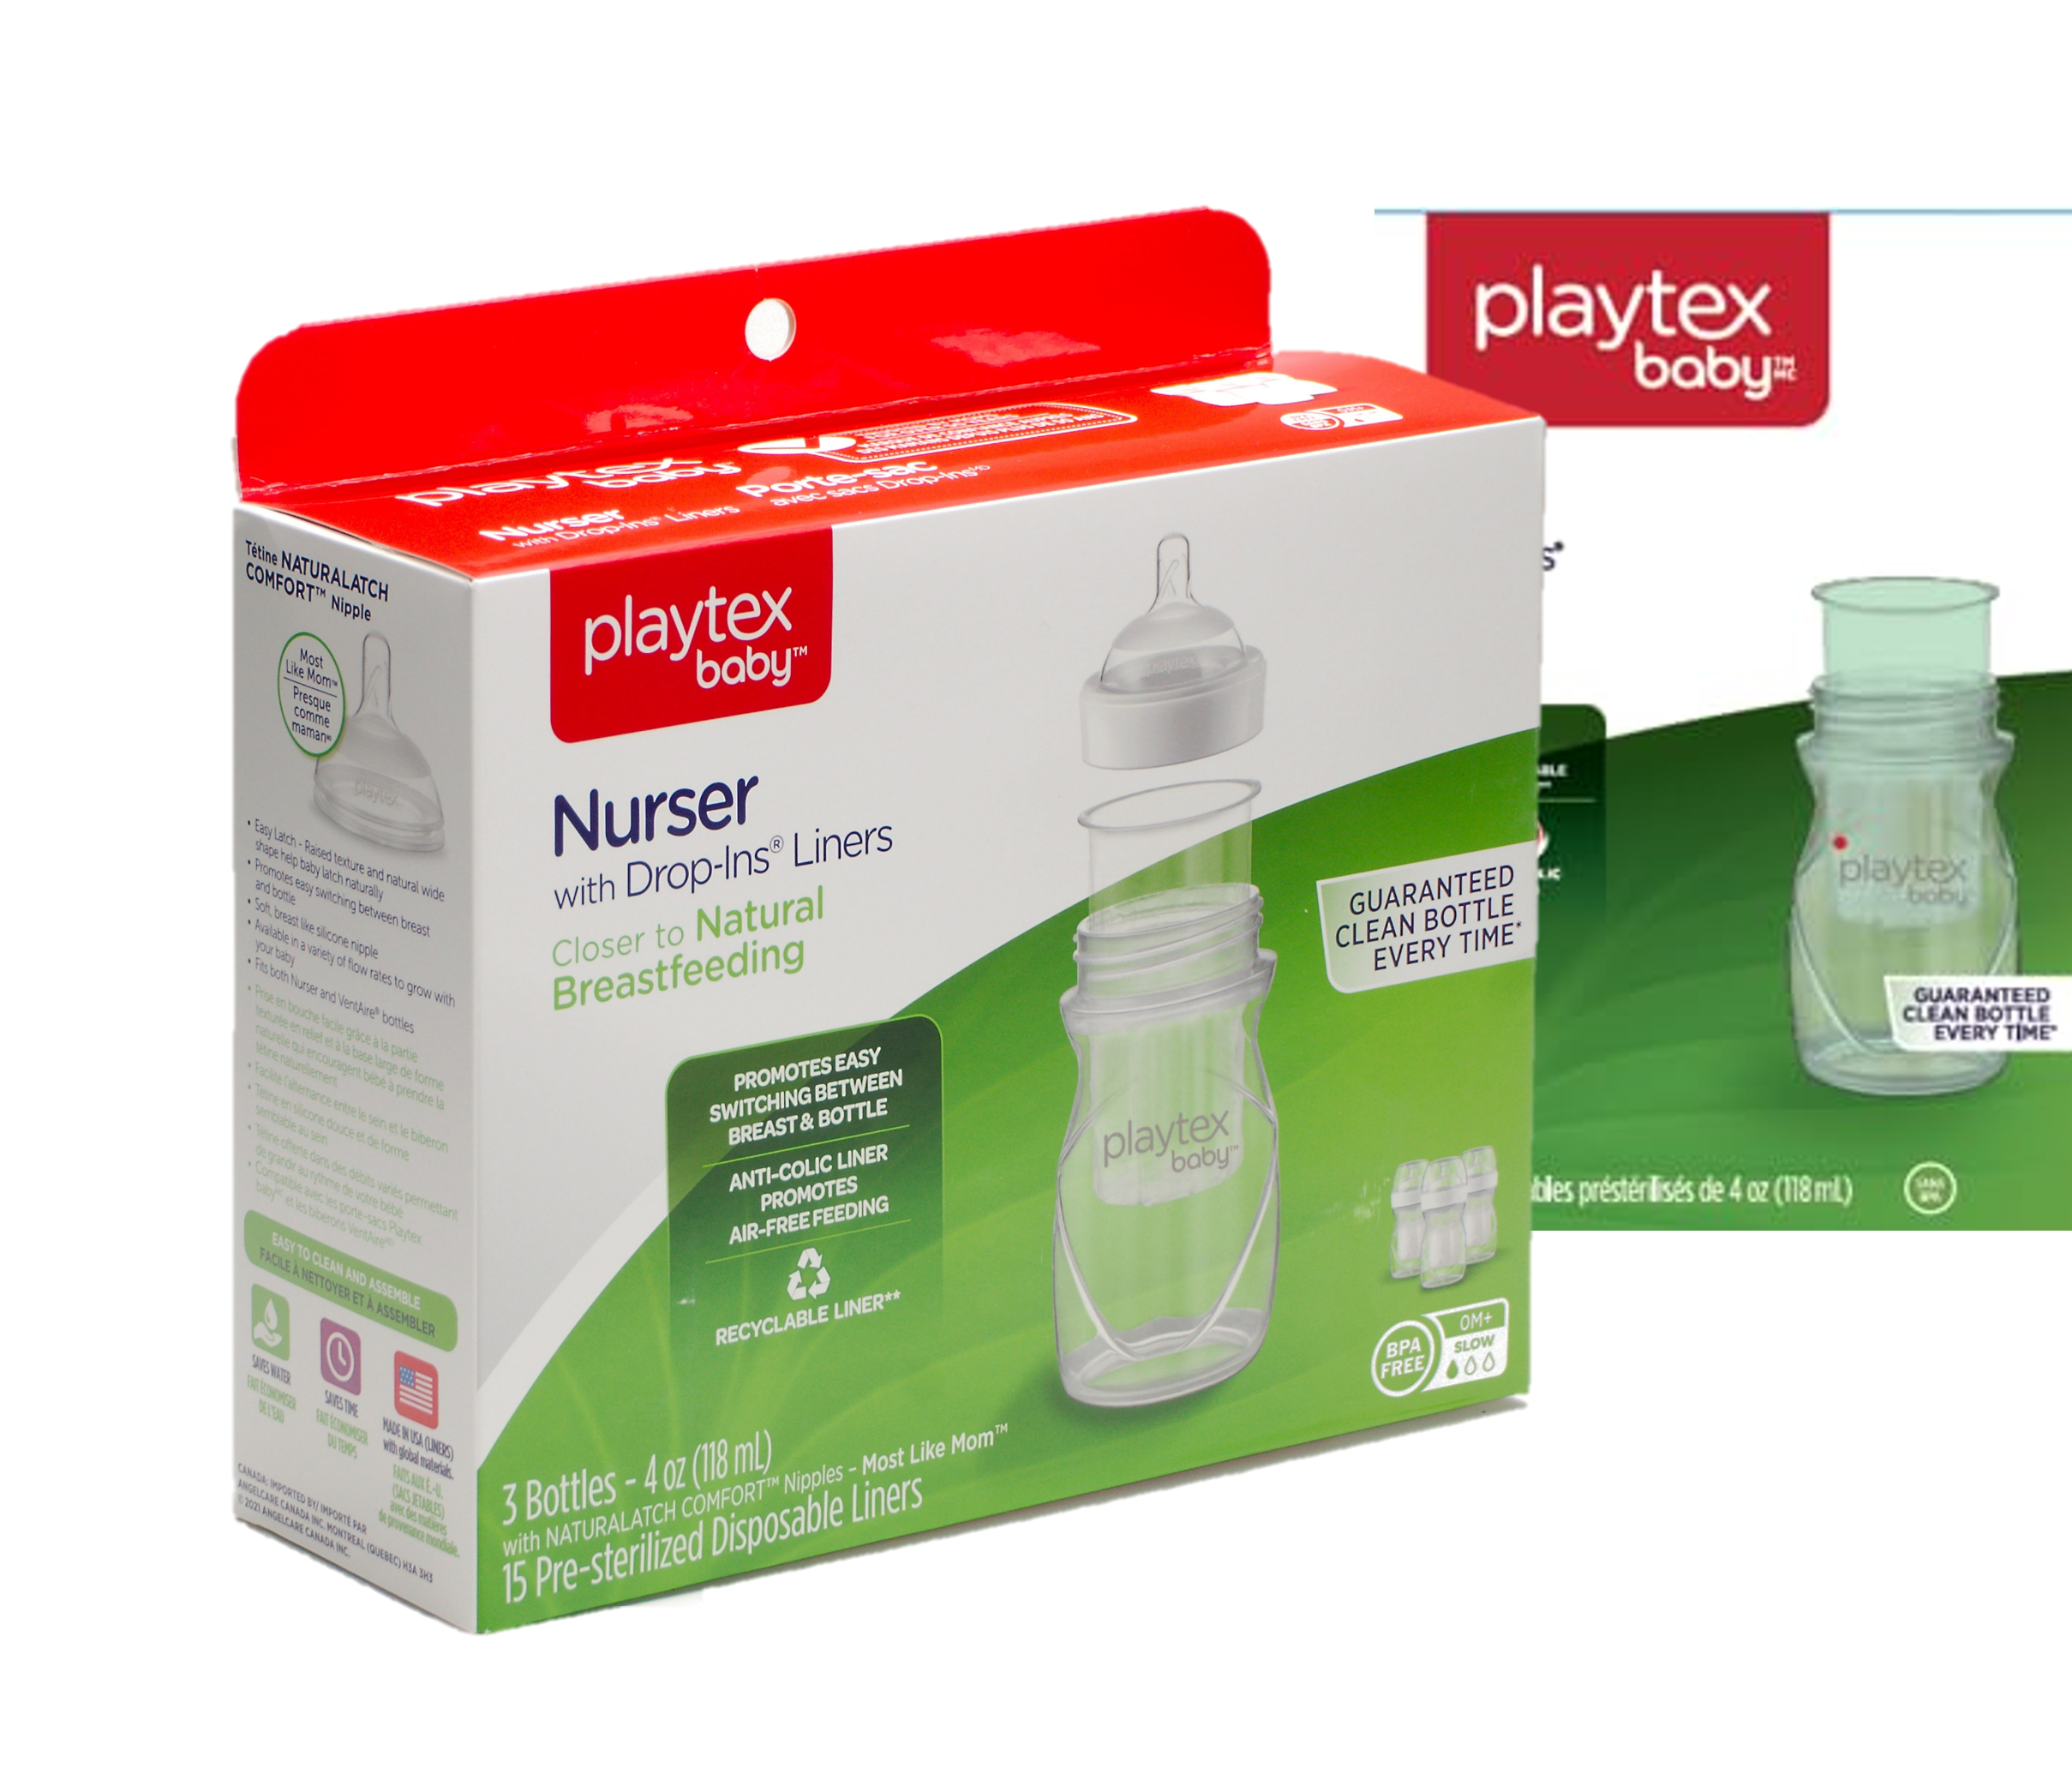 playtex baby bottles ventaire w/ nipples nurser liners dropins